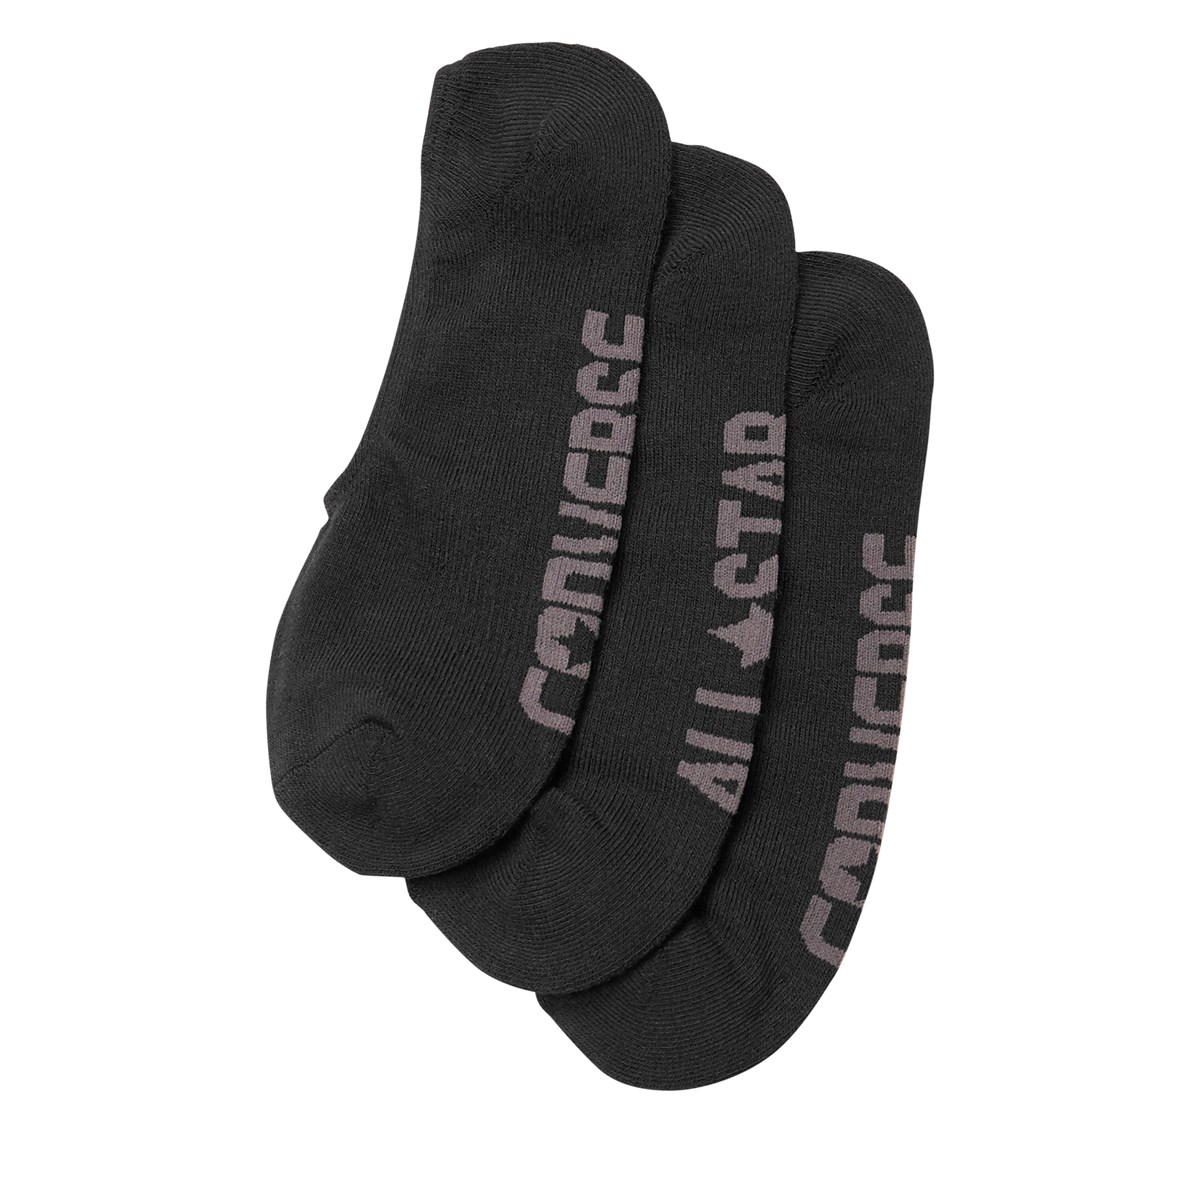 Men's Made For Chuck All Star Socks in Black